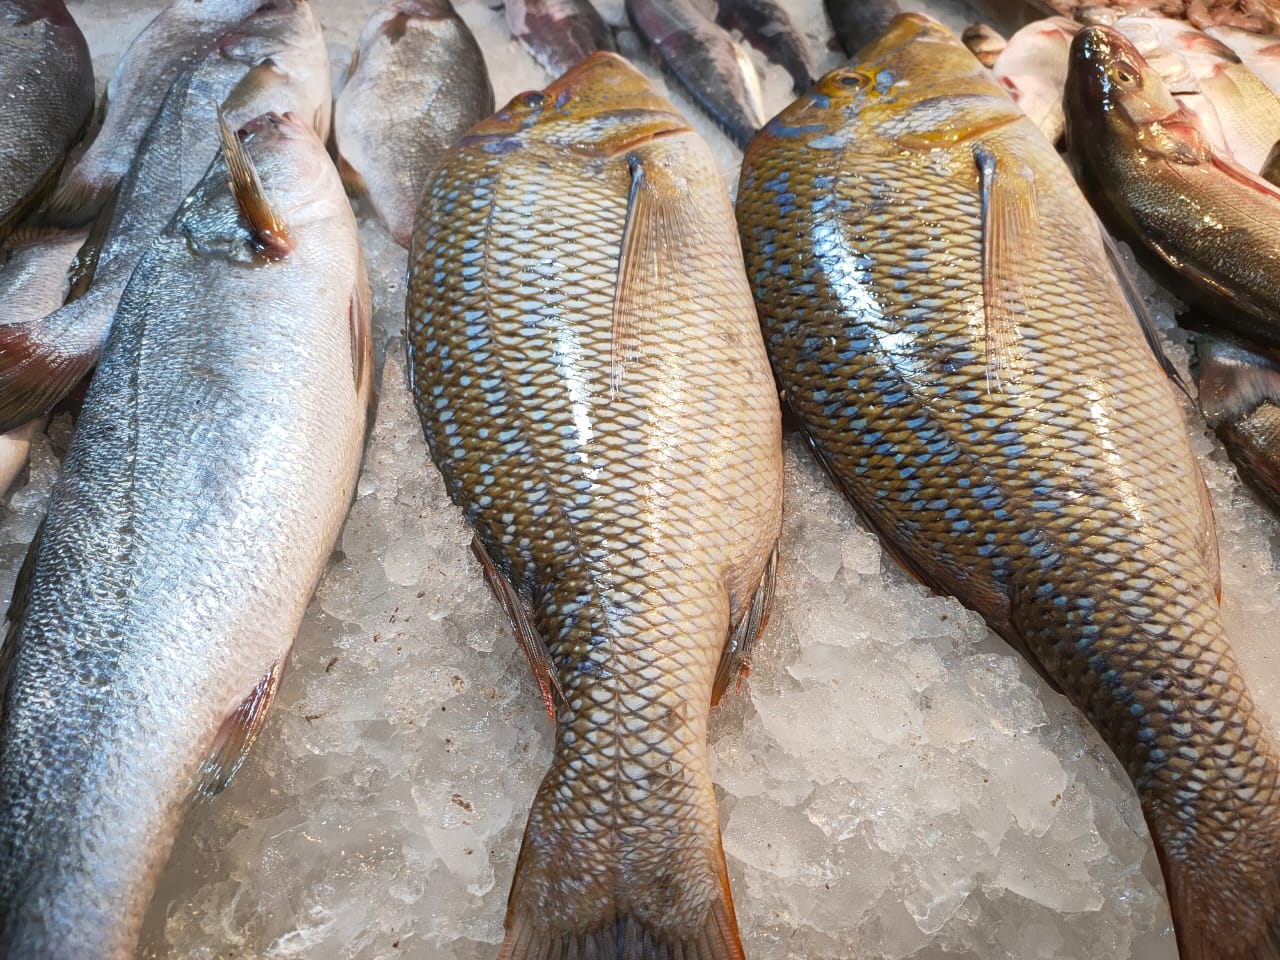 سوق الأنصاري للاسماك بمحافظة السويس (4)